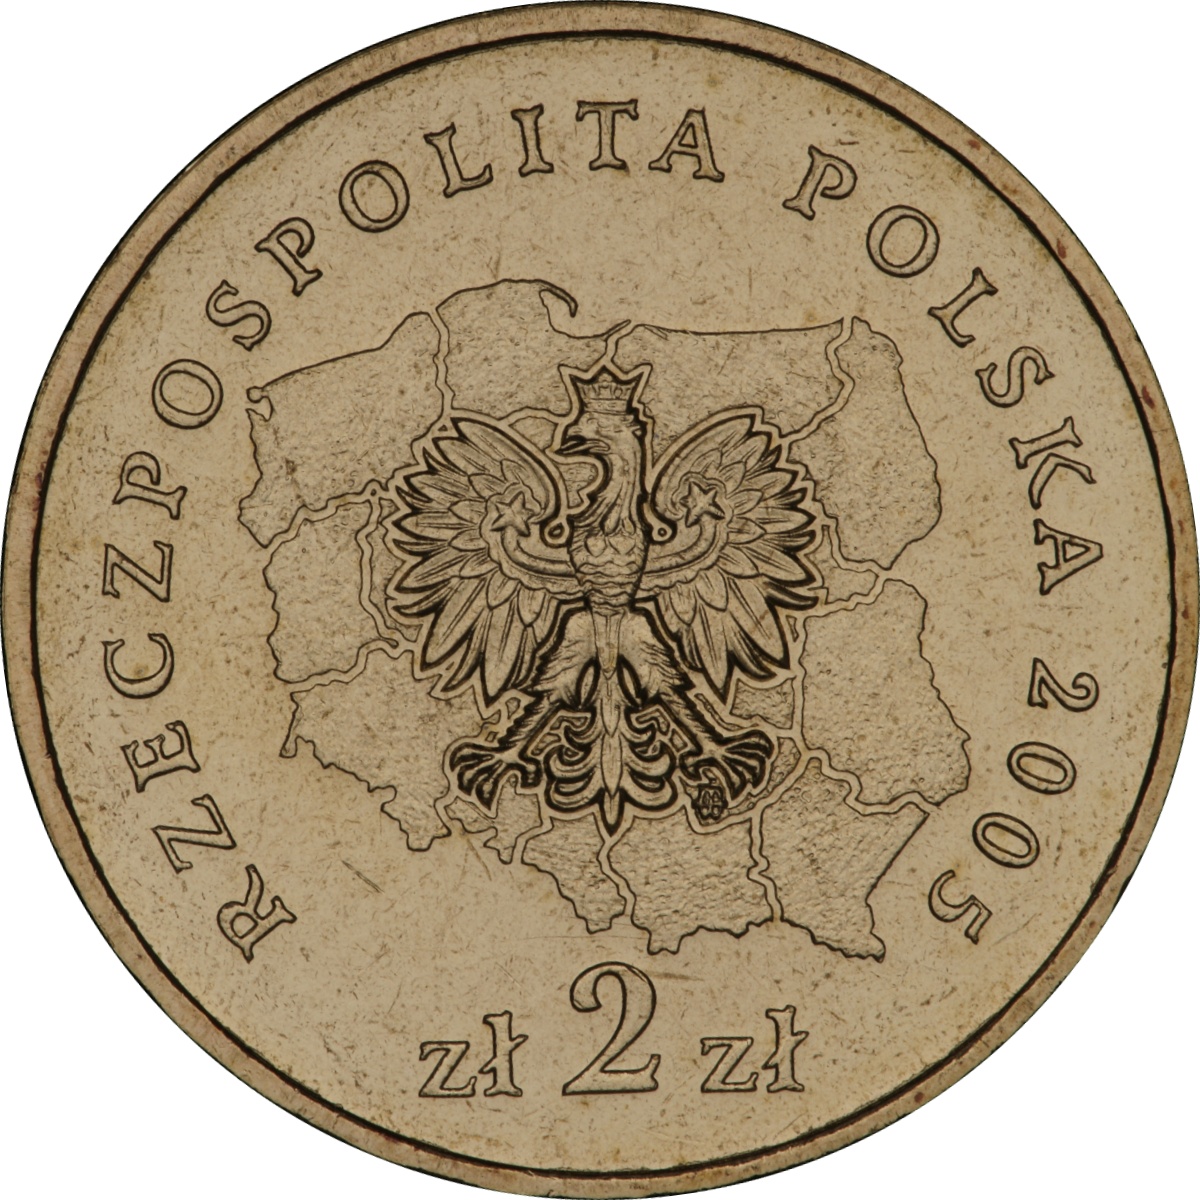 2zl-okolicznosciowe-wojewodztwo-wielkopolskie-awers-monety